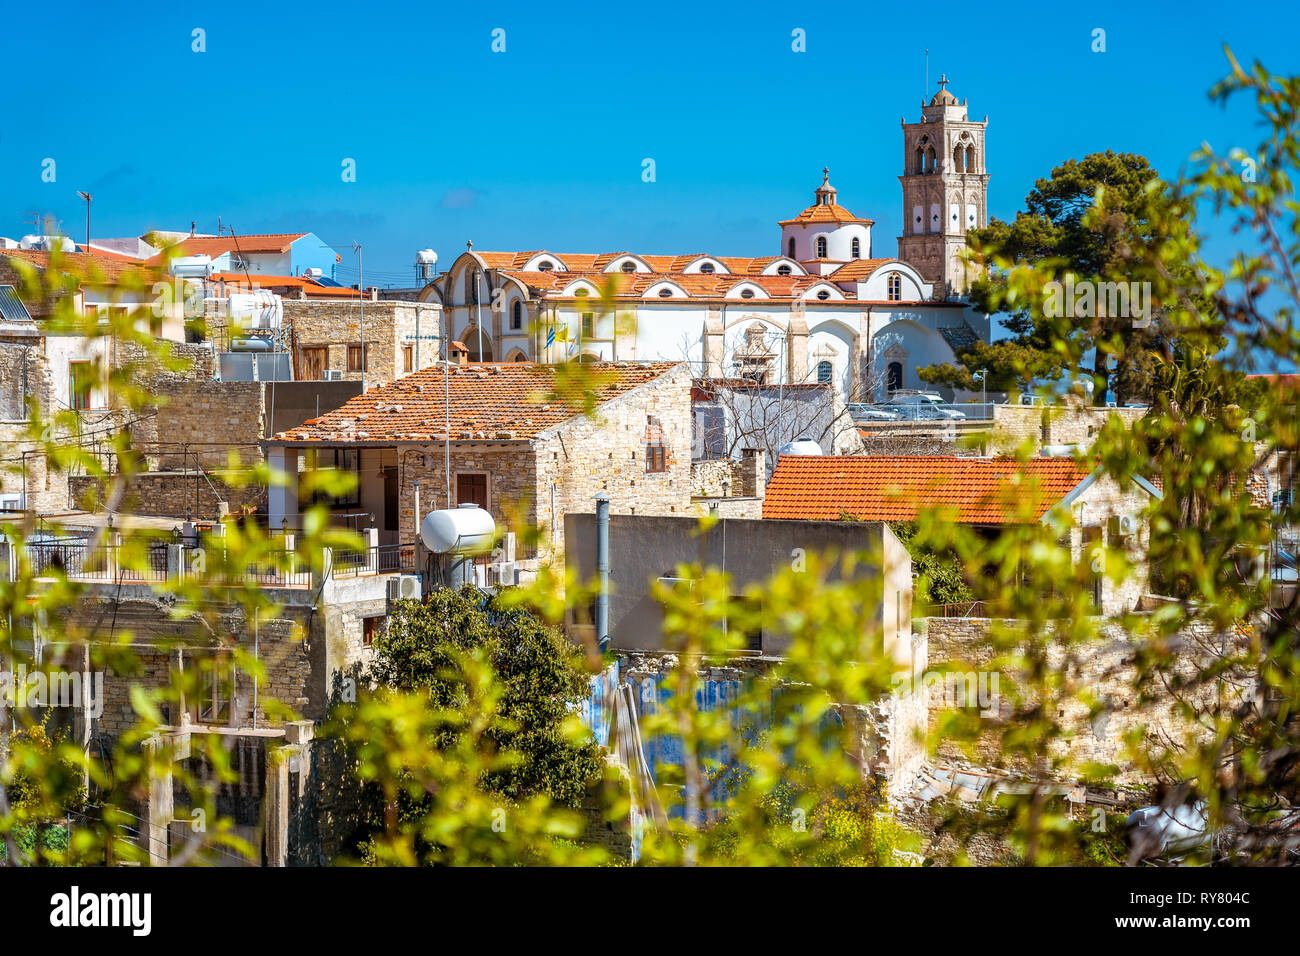 Herrliche Aussicht auf den berühmten Wahrzeichen Reiseziel tal Pano Lefkara Dorf, Larnaca, Zypern durch keramische Fliesen- Haus Dächer und Griechisch-orthodoxen bekannt Stockfoto